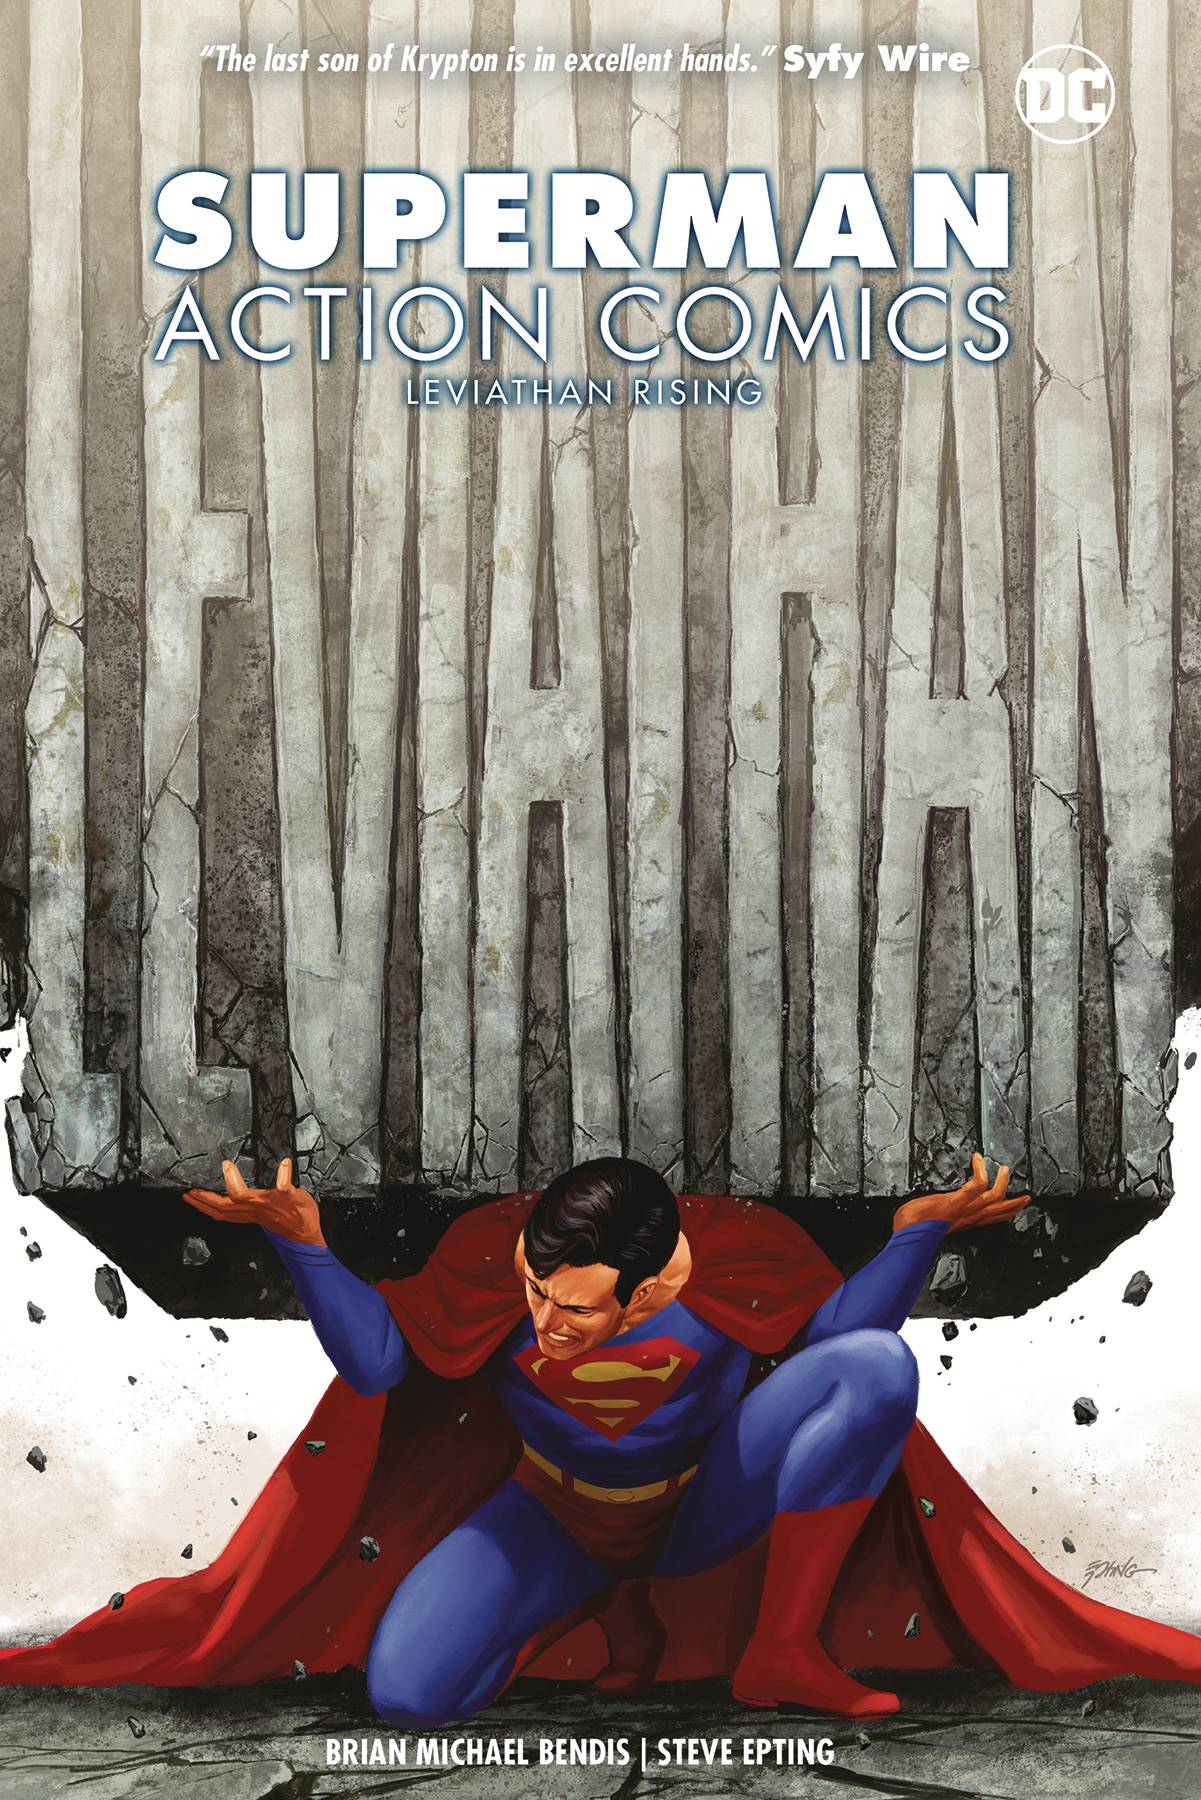 Superman Action Comics TPB Vol 2 Leviathan Rising